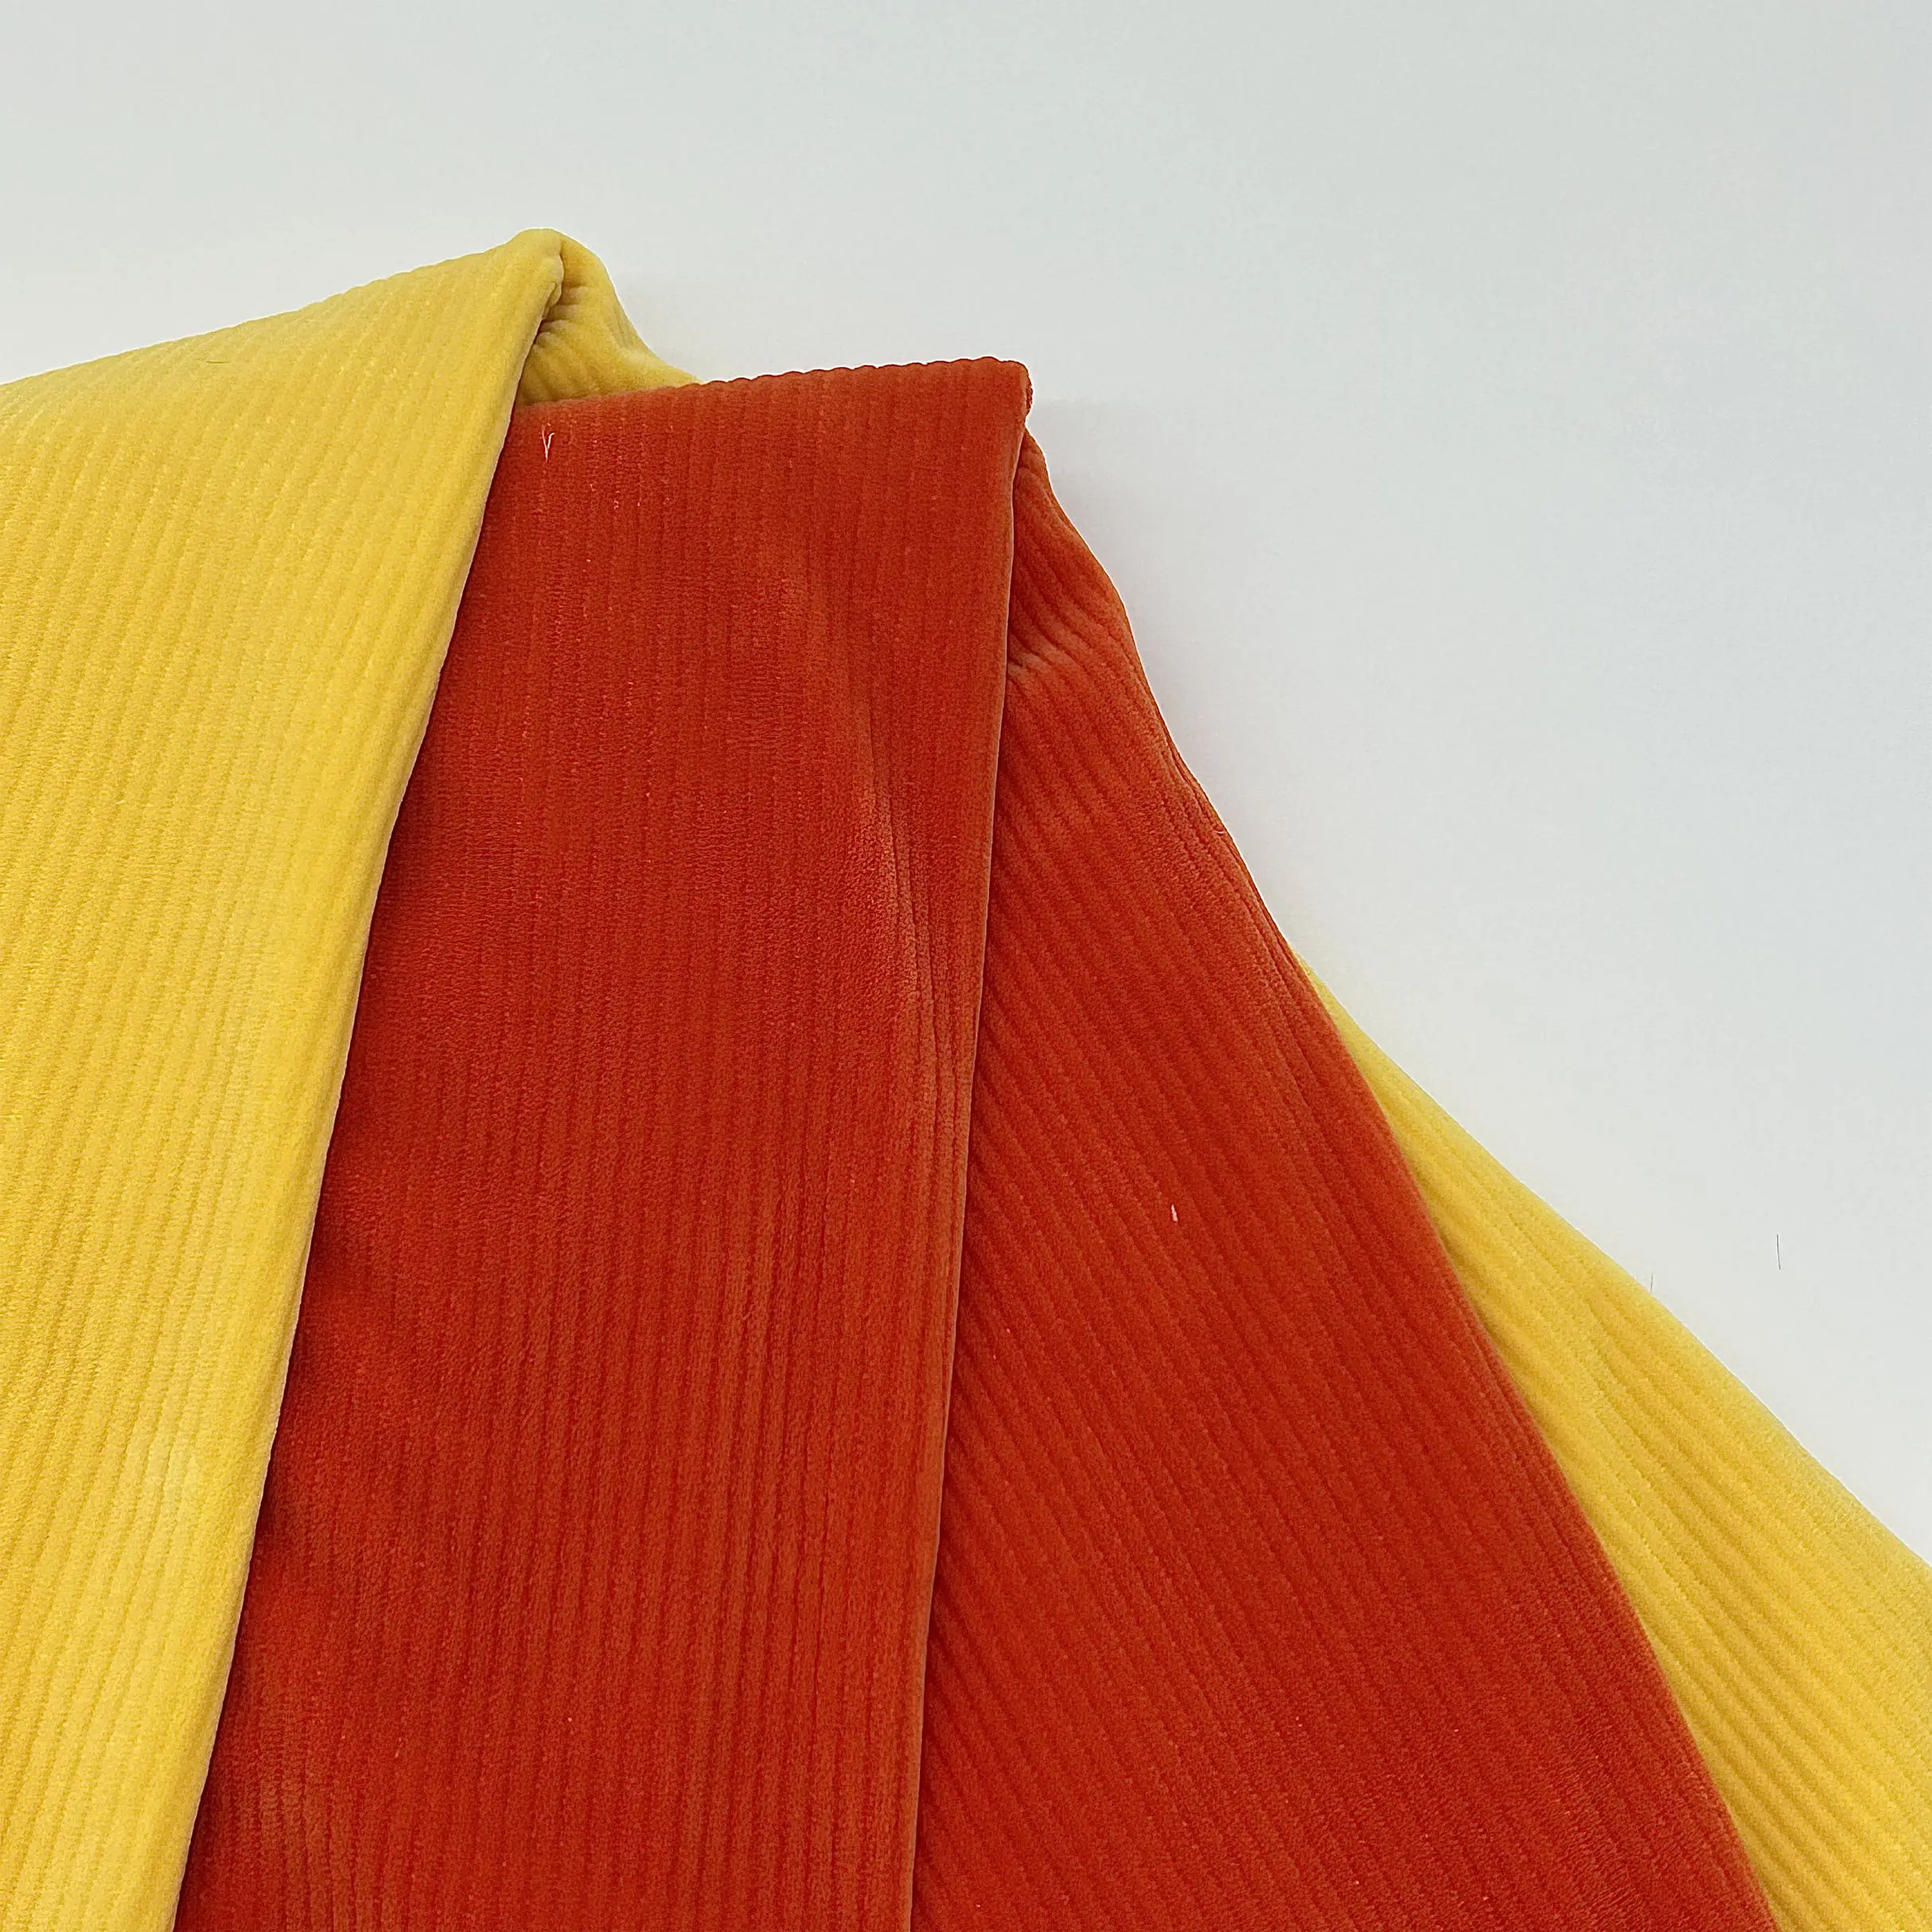 Tela listrada vermelha e branca do Spandex do estiramento da maneira do enrugamento 4 do elevado grau anti para a roupa